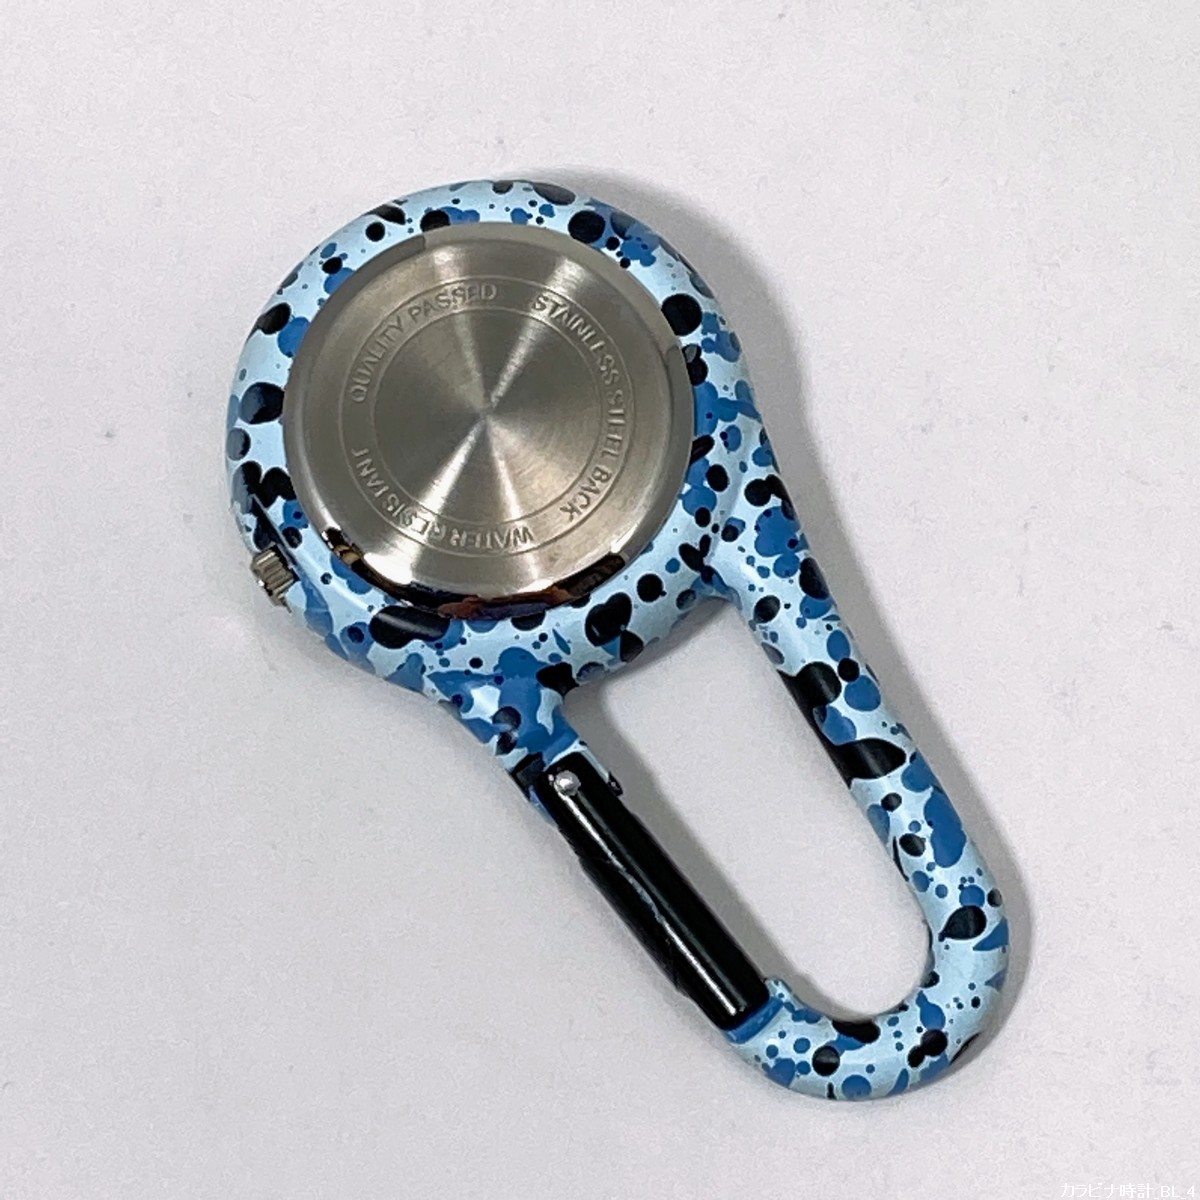 [ не использовался ] брелок для ключа часы kalabina часы камуфляж голубой уличный кемпинг сделано в Японии Movement No.30128-2